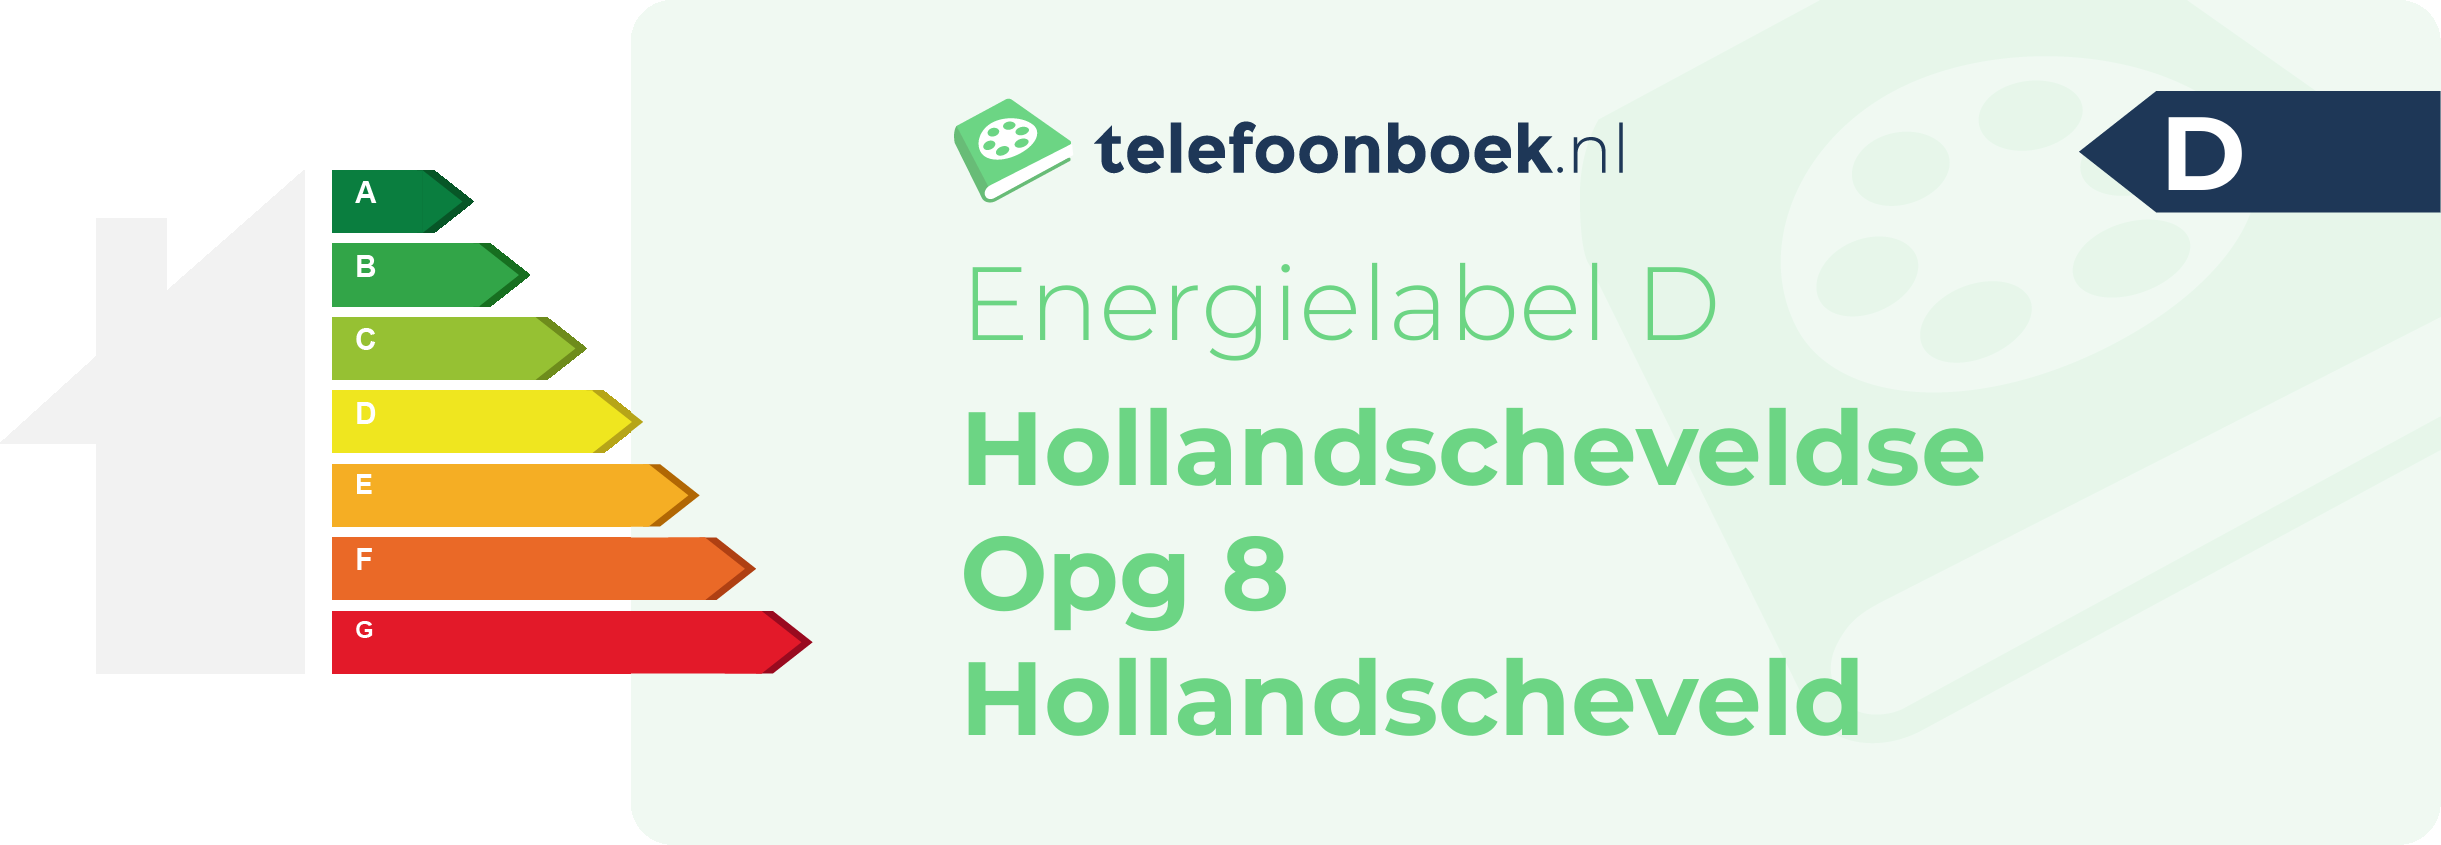 Energielabel Hollandscheveldse Opg 8 Hollandscheveld